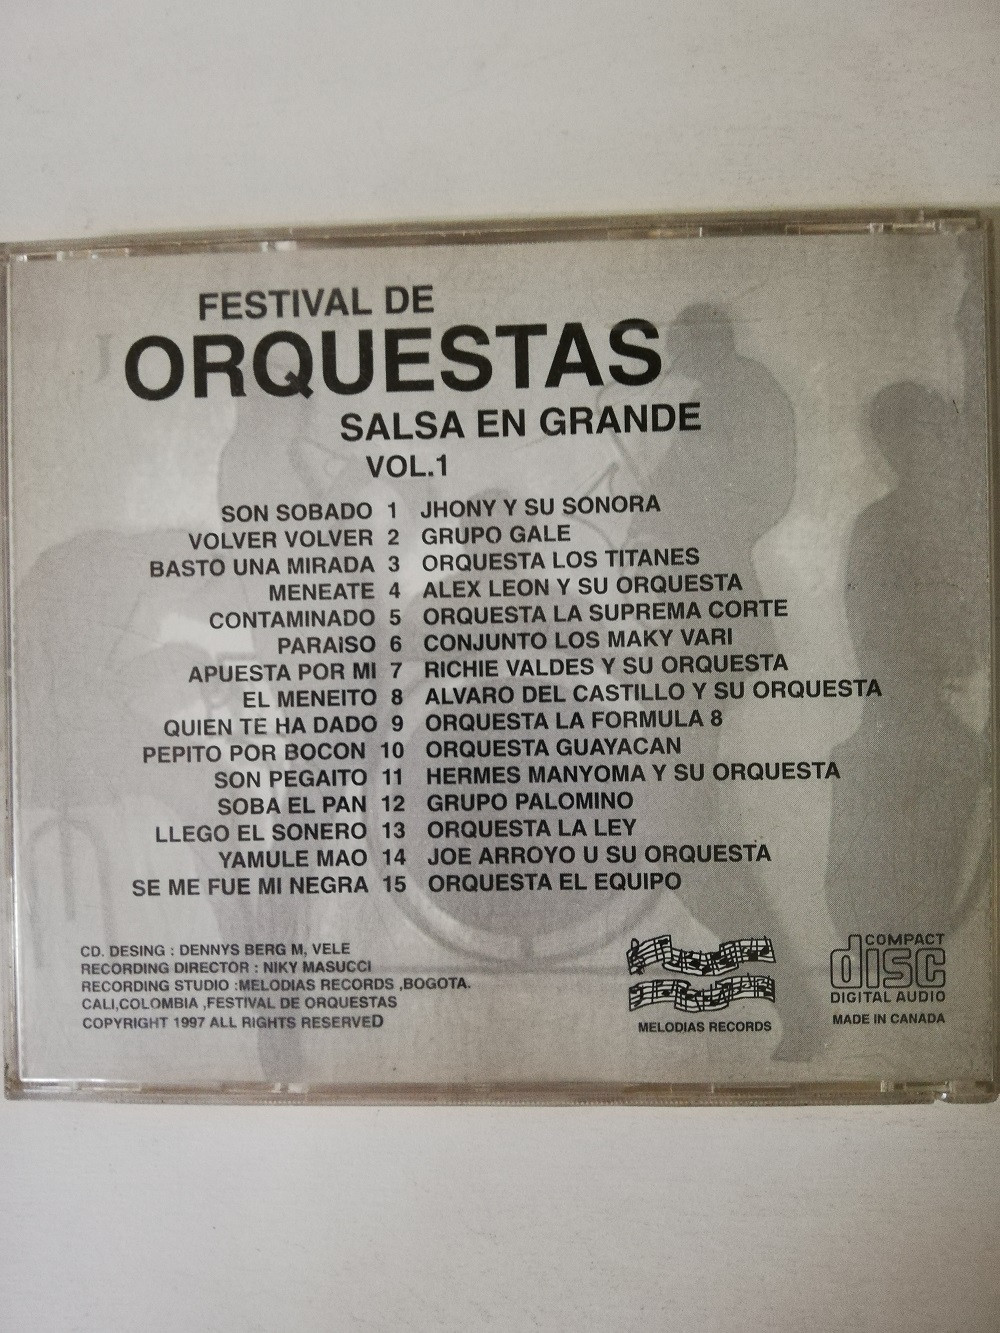 Imagen CD FESTIVAL DE ORQUESTAS - SALSA EN GRANDE VOL. 1 2